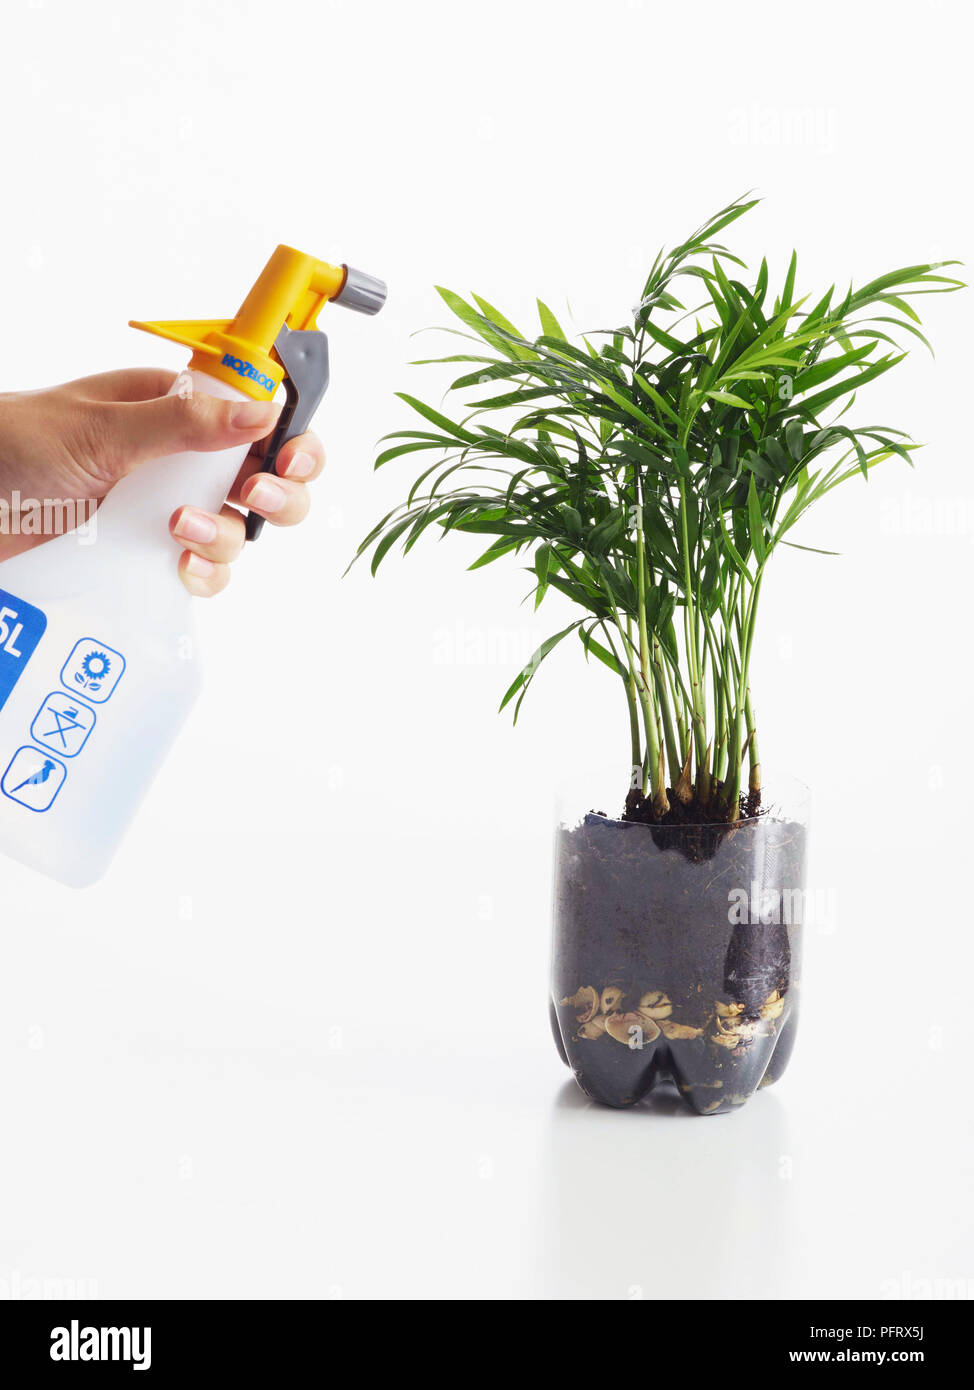 Bilden ein Dschungel / Regenwald in einer Flasche mit einem wissenschaftlichen Experiment. Schritt 7, besprühen Sie die Blätter mit Wasser und etwas Wasser auf den Boden. Stockfoto